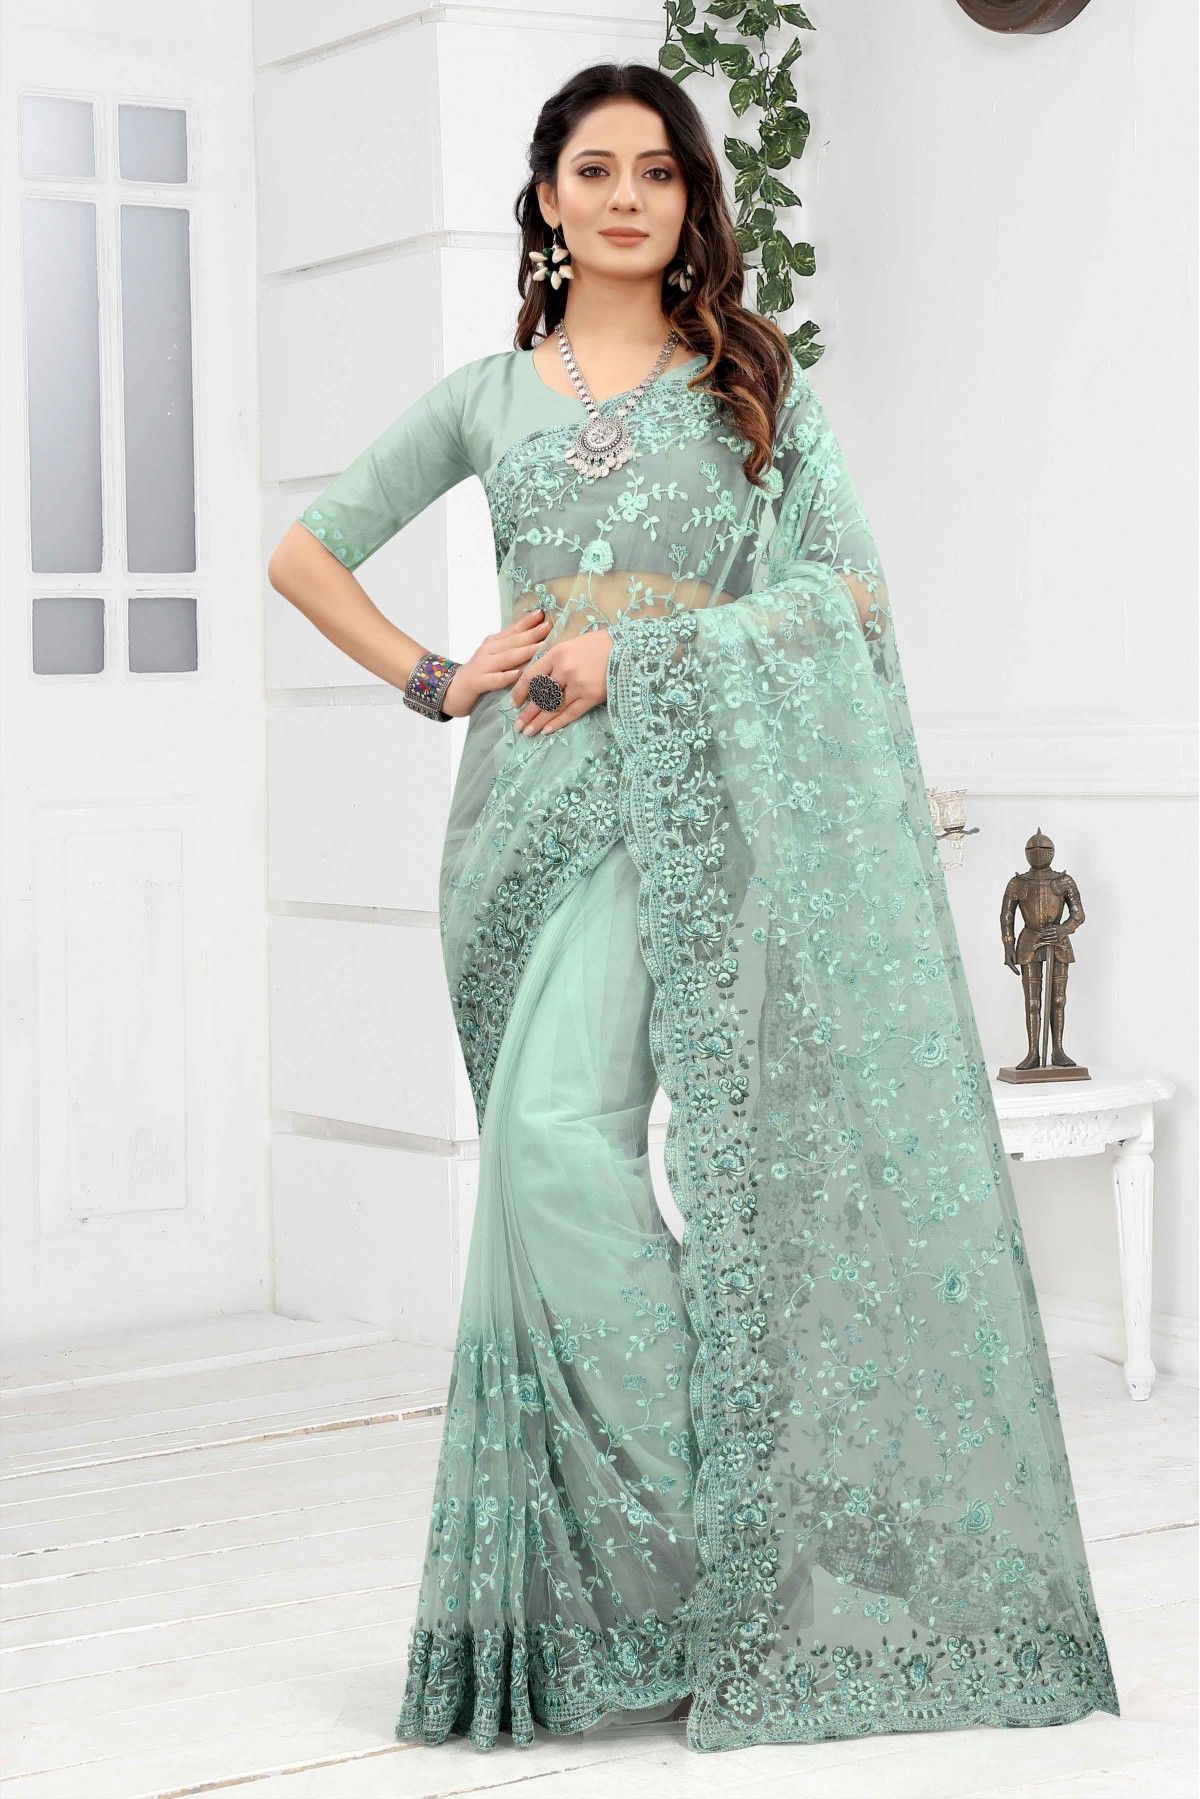 Shivani Rajashekar stuns in green silk saree for Zee5 event! |  Fashionworldhub